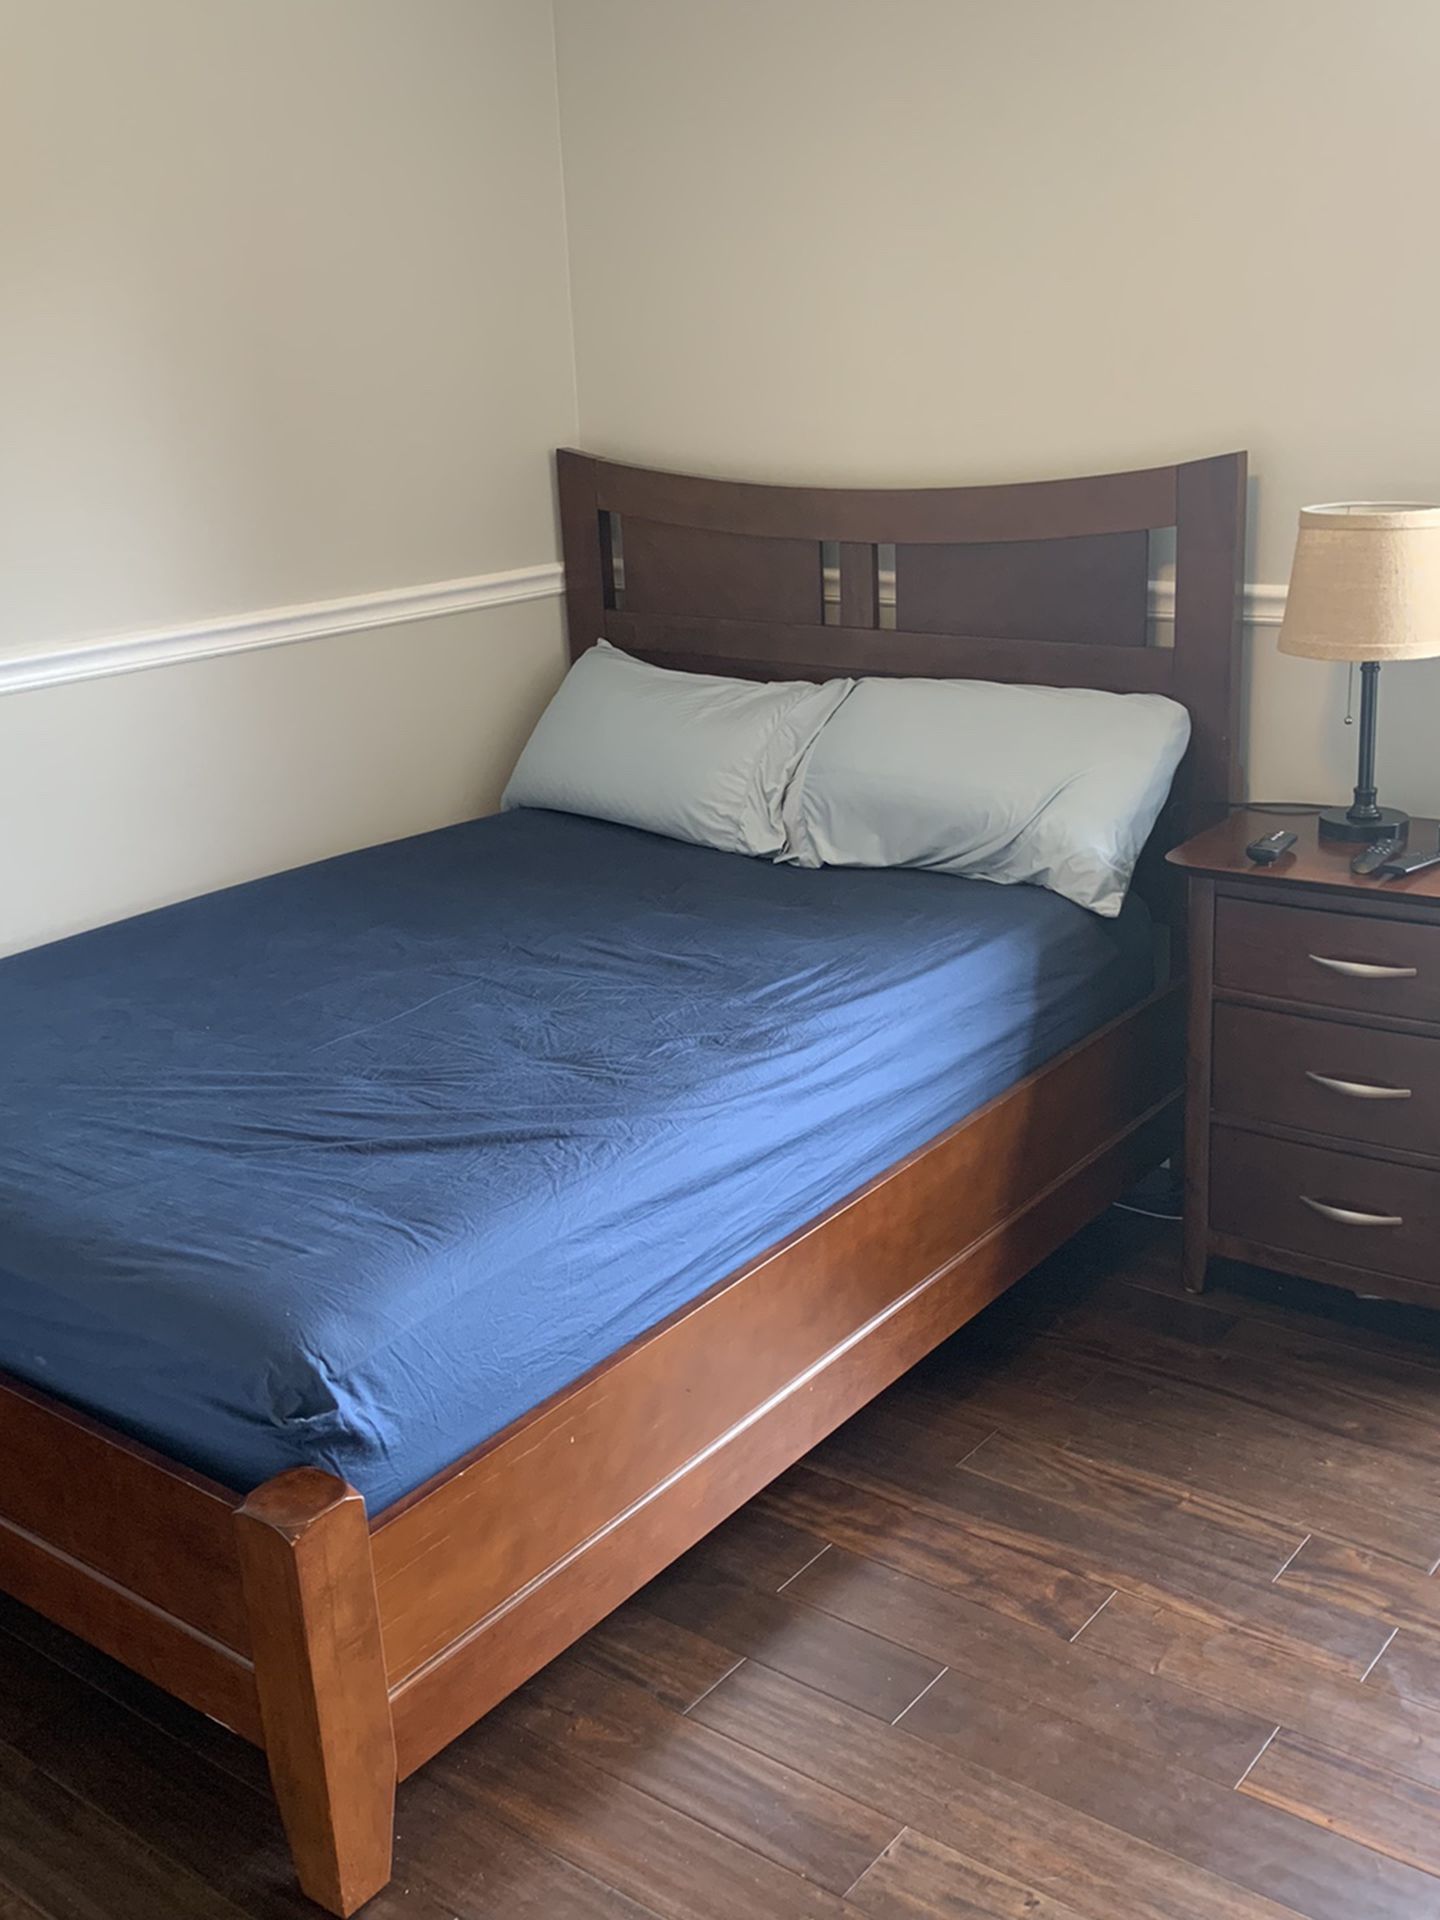 Full size bedroom Set